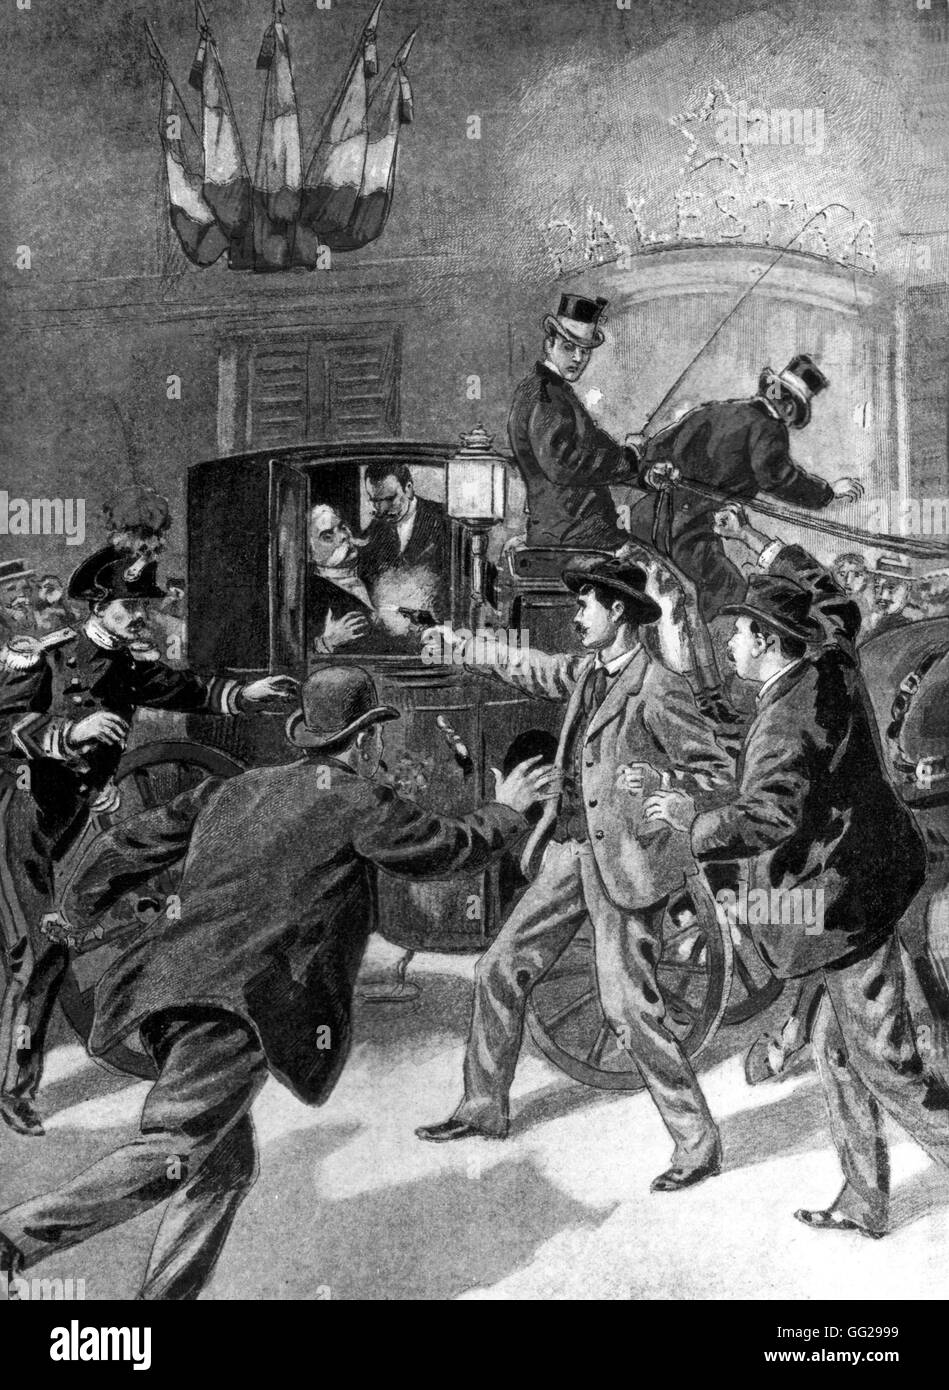 Assassinat du roi Humbert 1er à Monza par l'anarchiste Bresci , août 1900 Italie Banque D'Images